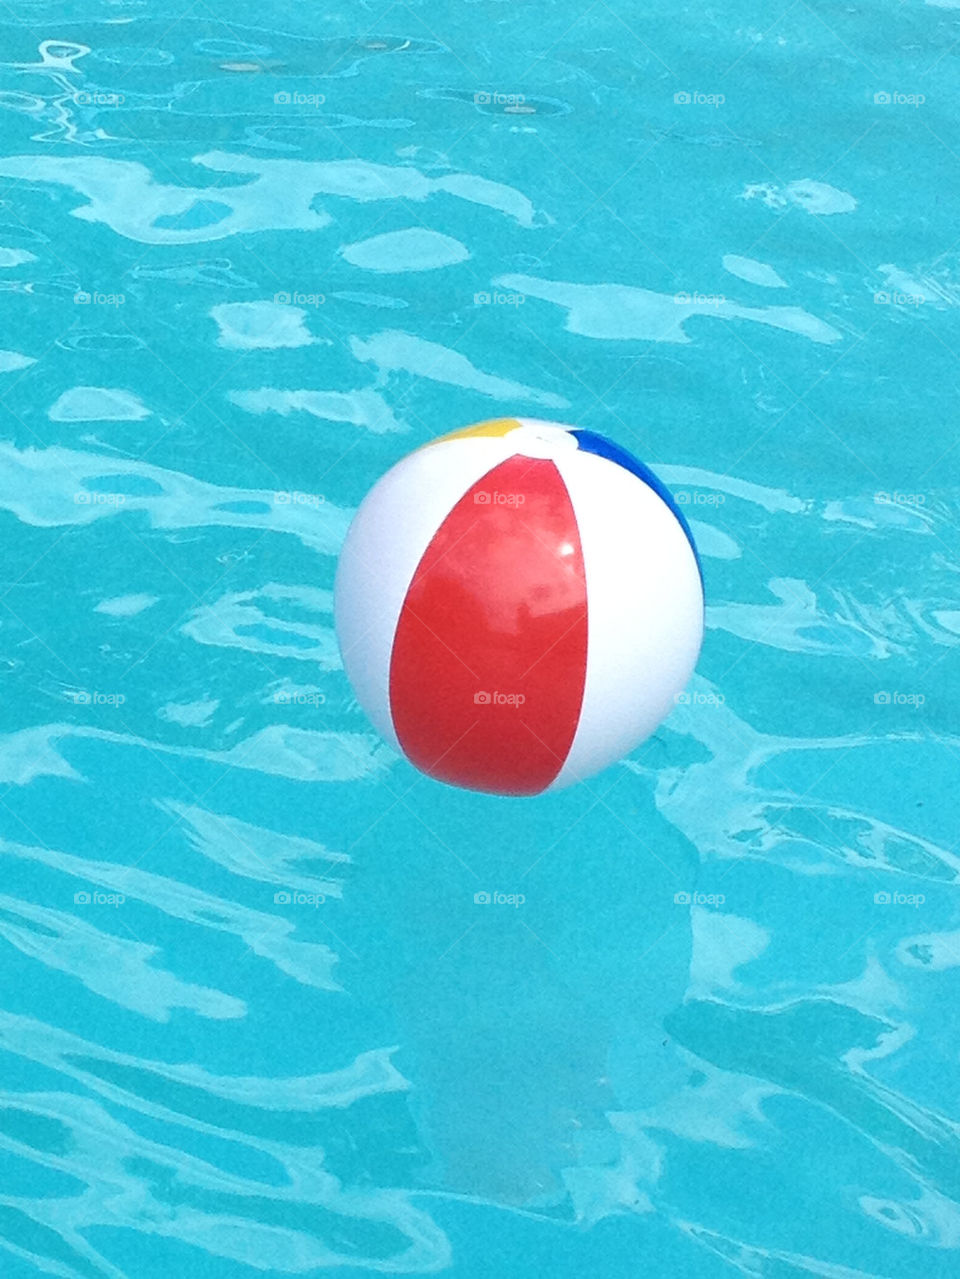 beach fun water ball by robinmc4